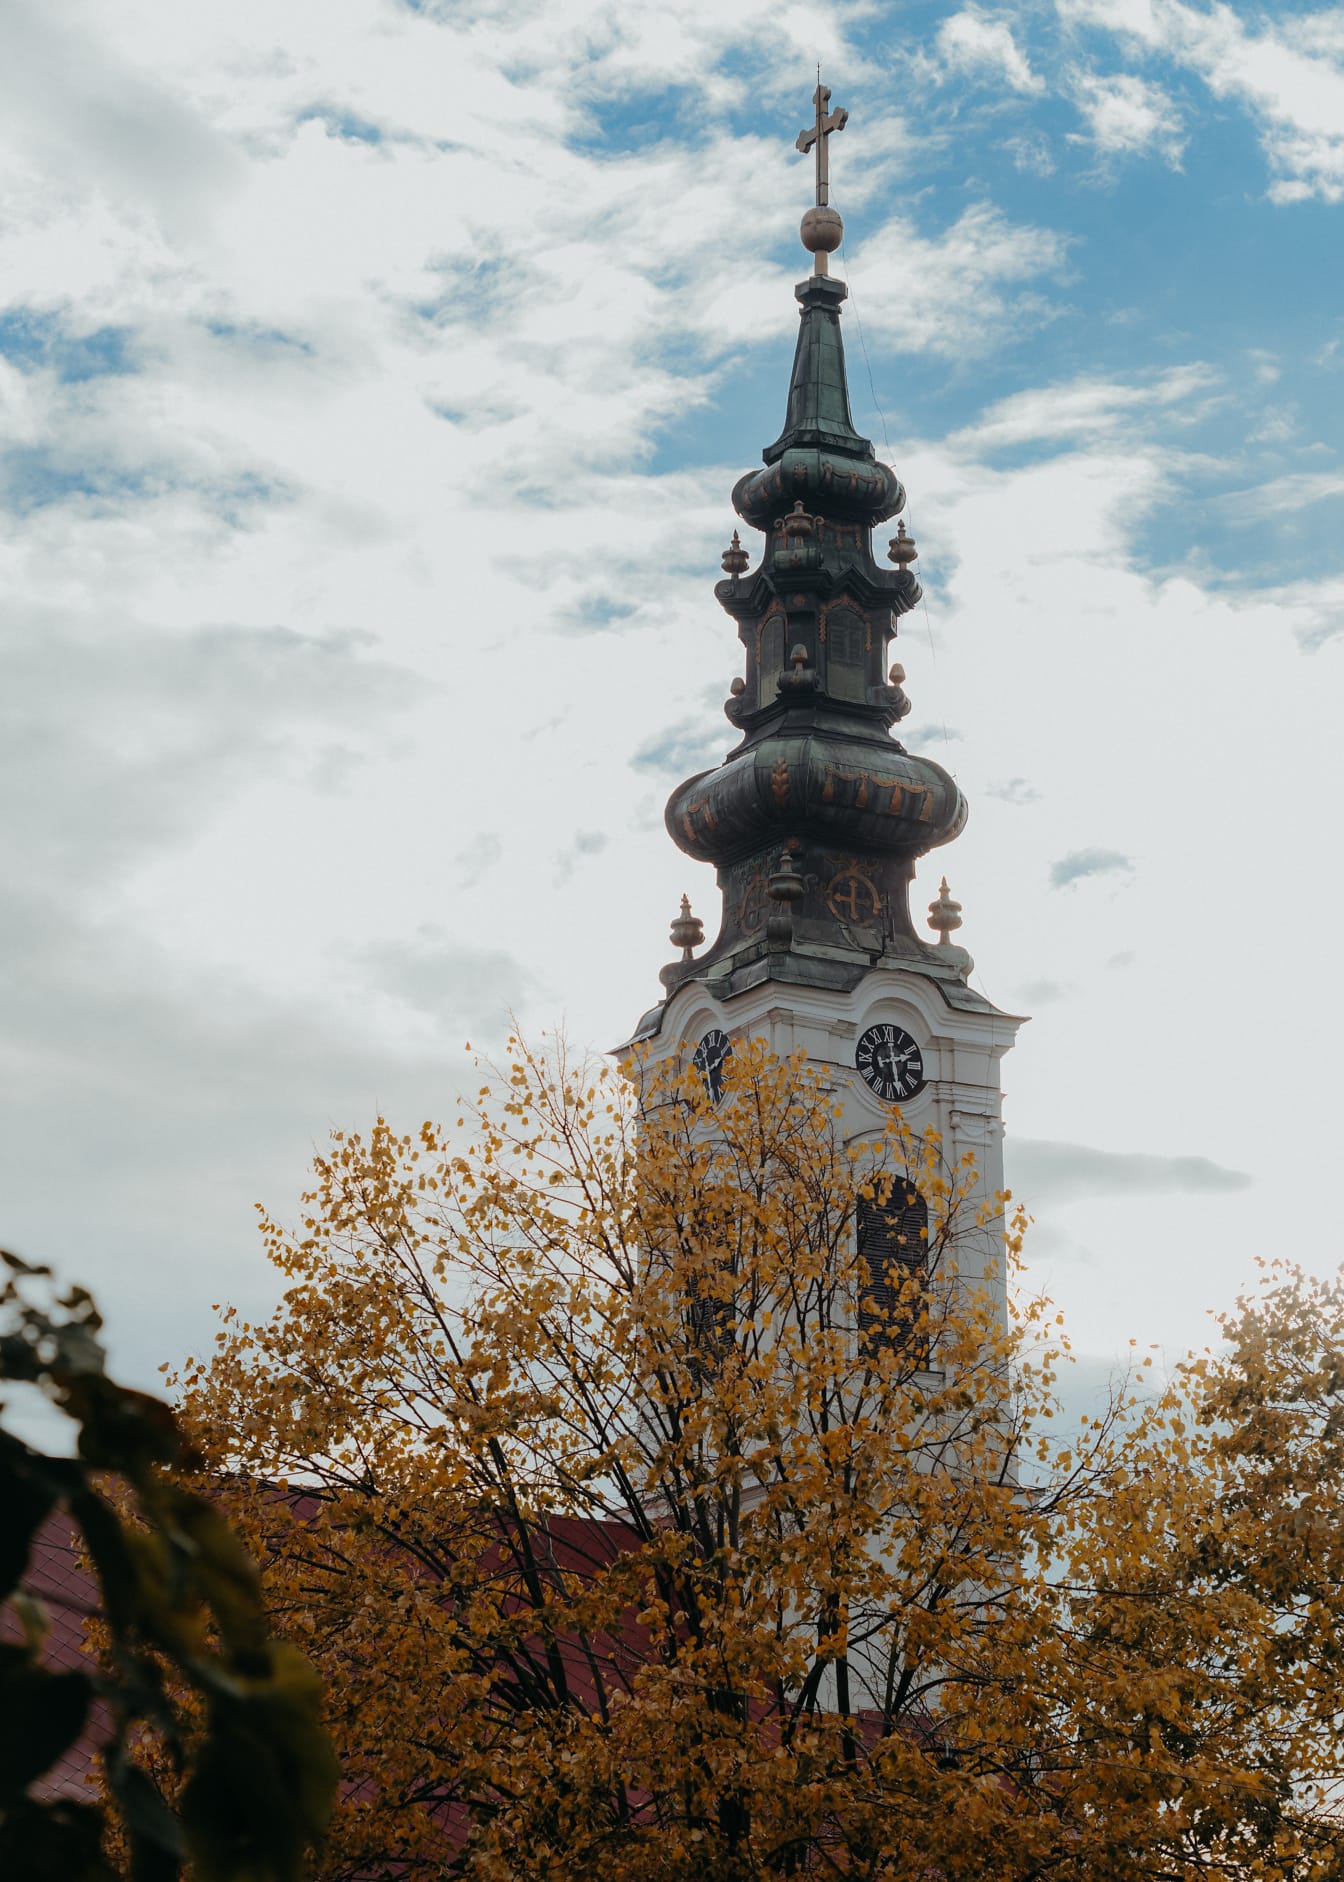 Srbská pravoslavná kostelní věž s modrou oblohou s mraky v pozadí